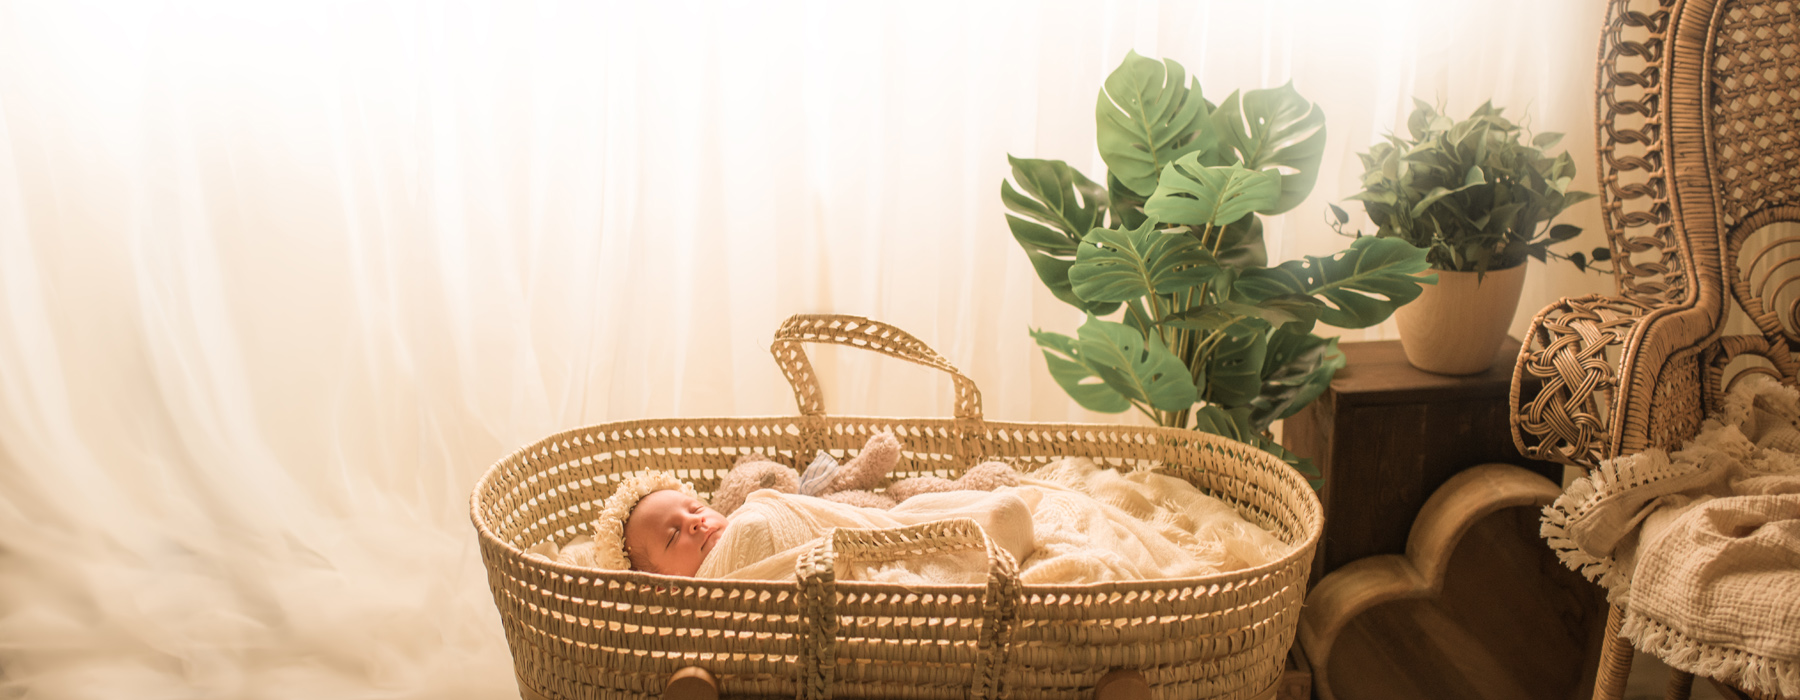 تصوير حديثي الولادة بنمط بوهيمي باستخدام ضوء طبيعي